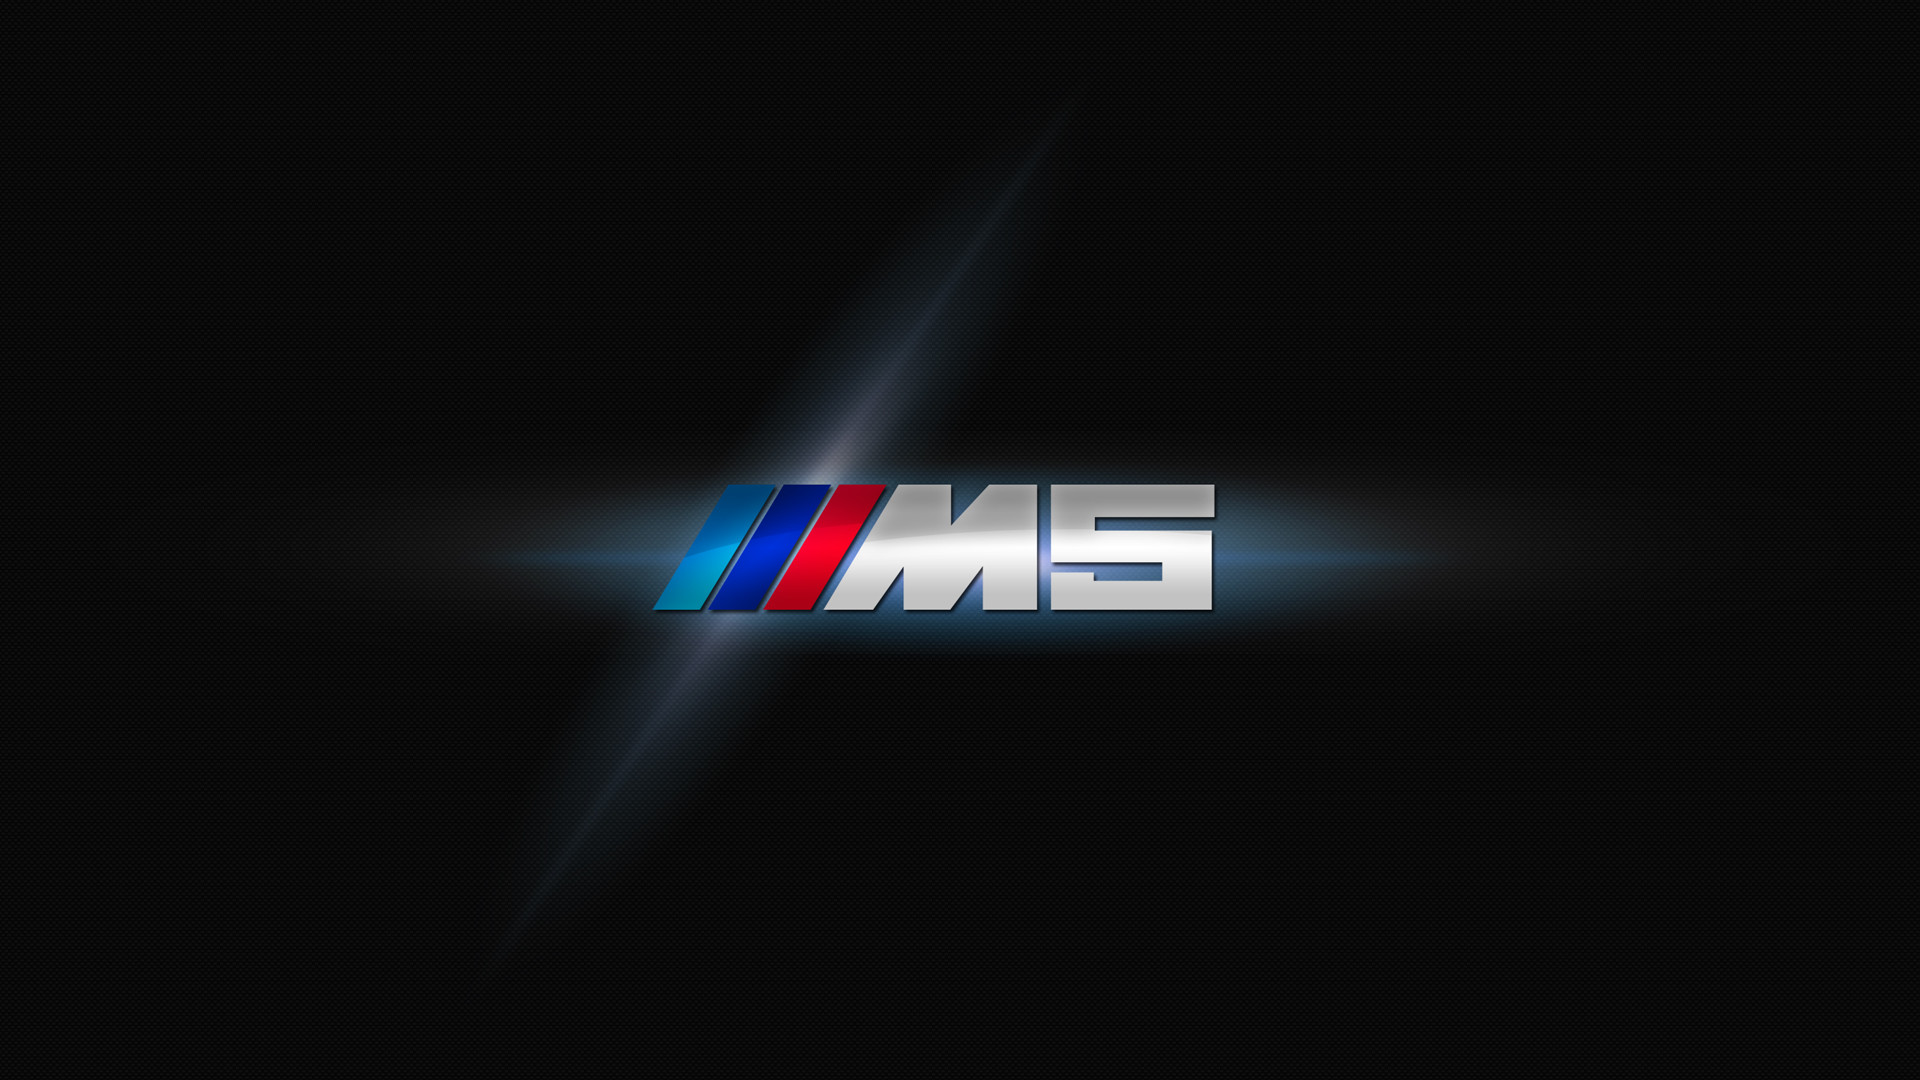 BMW M Logo Wallpaper ·① WallpaperTag